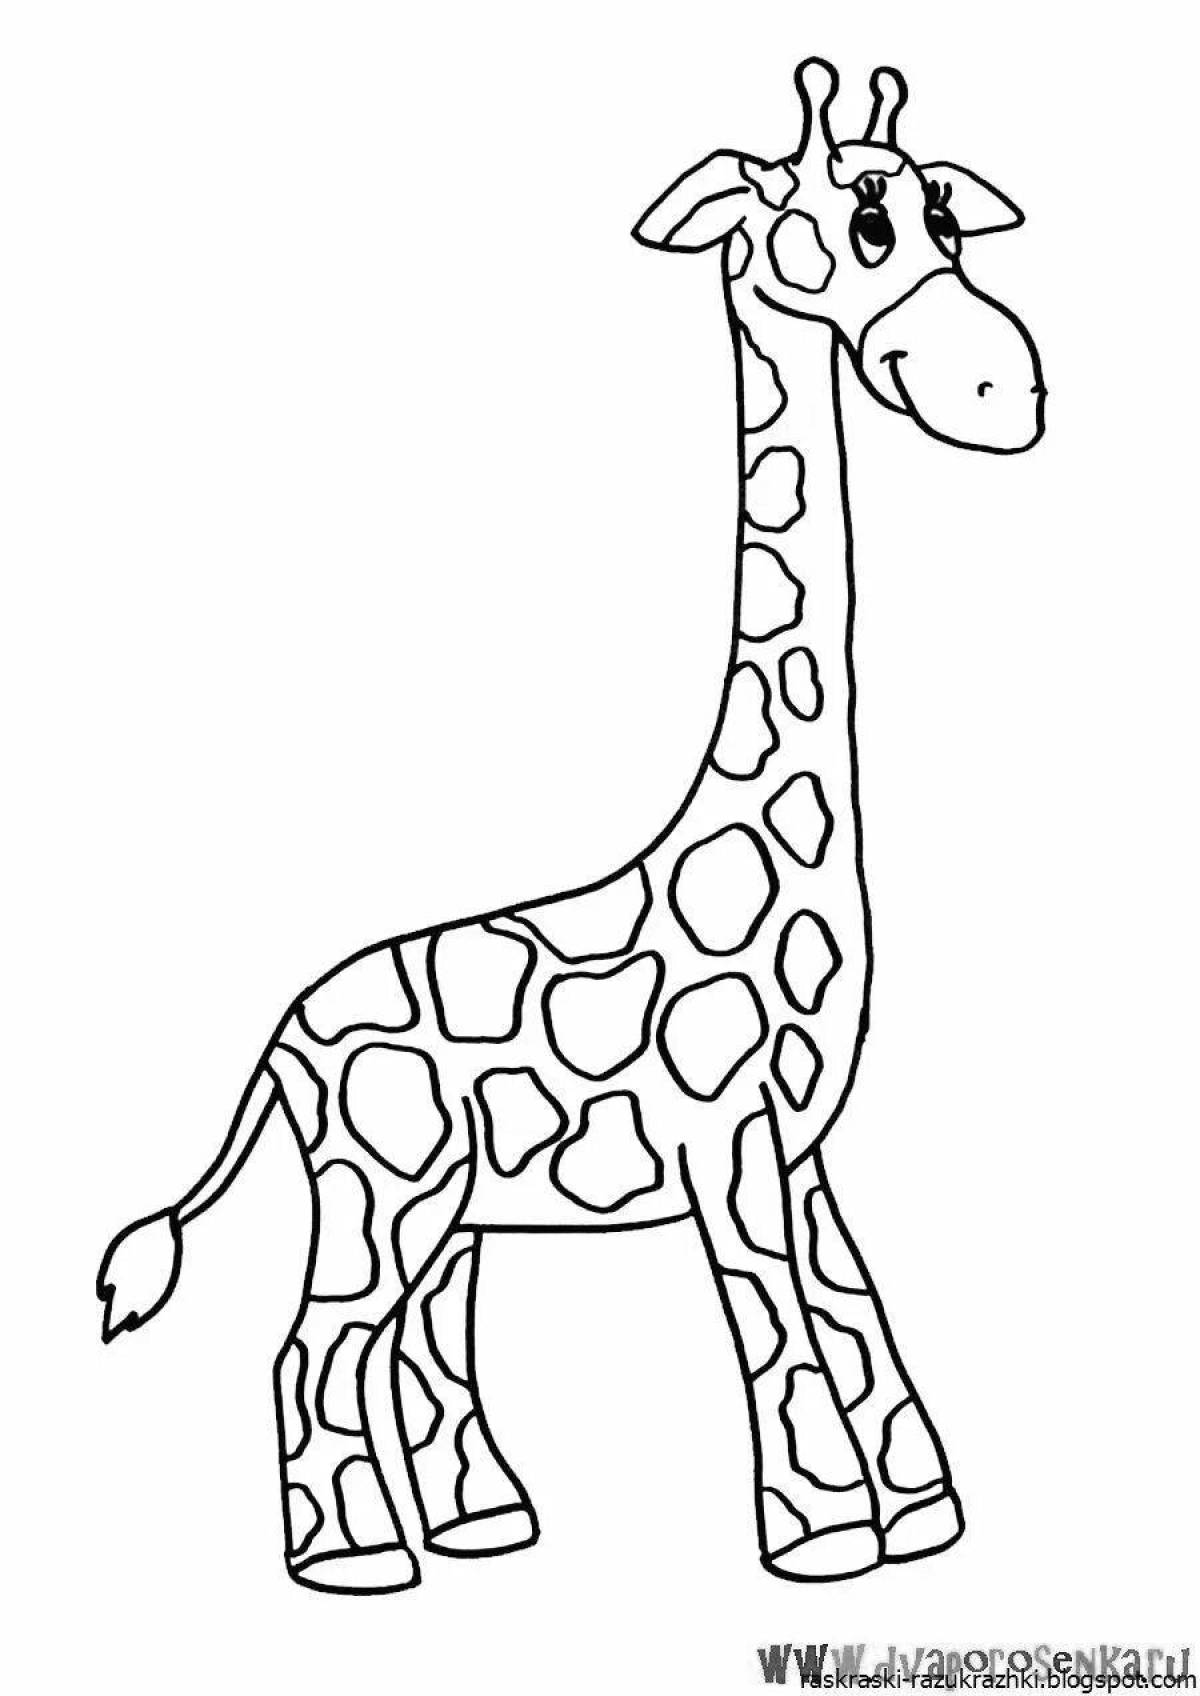 Изысканная раскраска жирафа